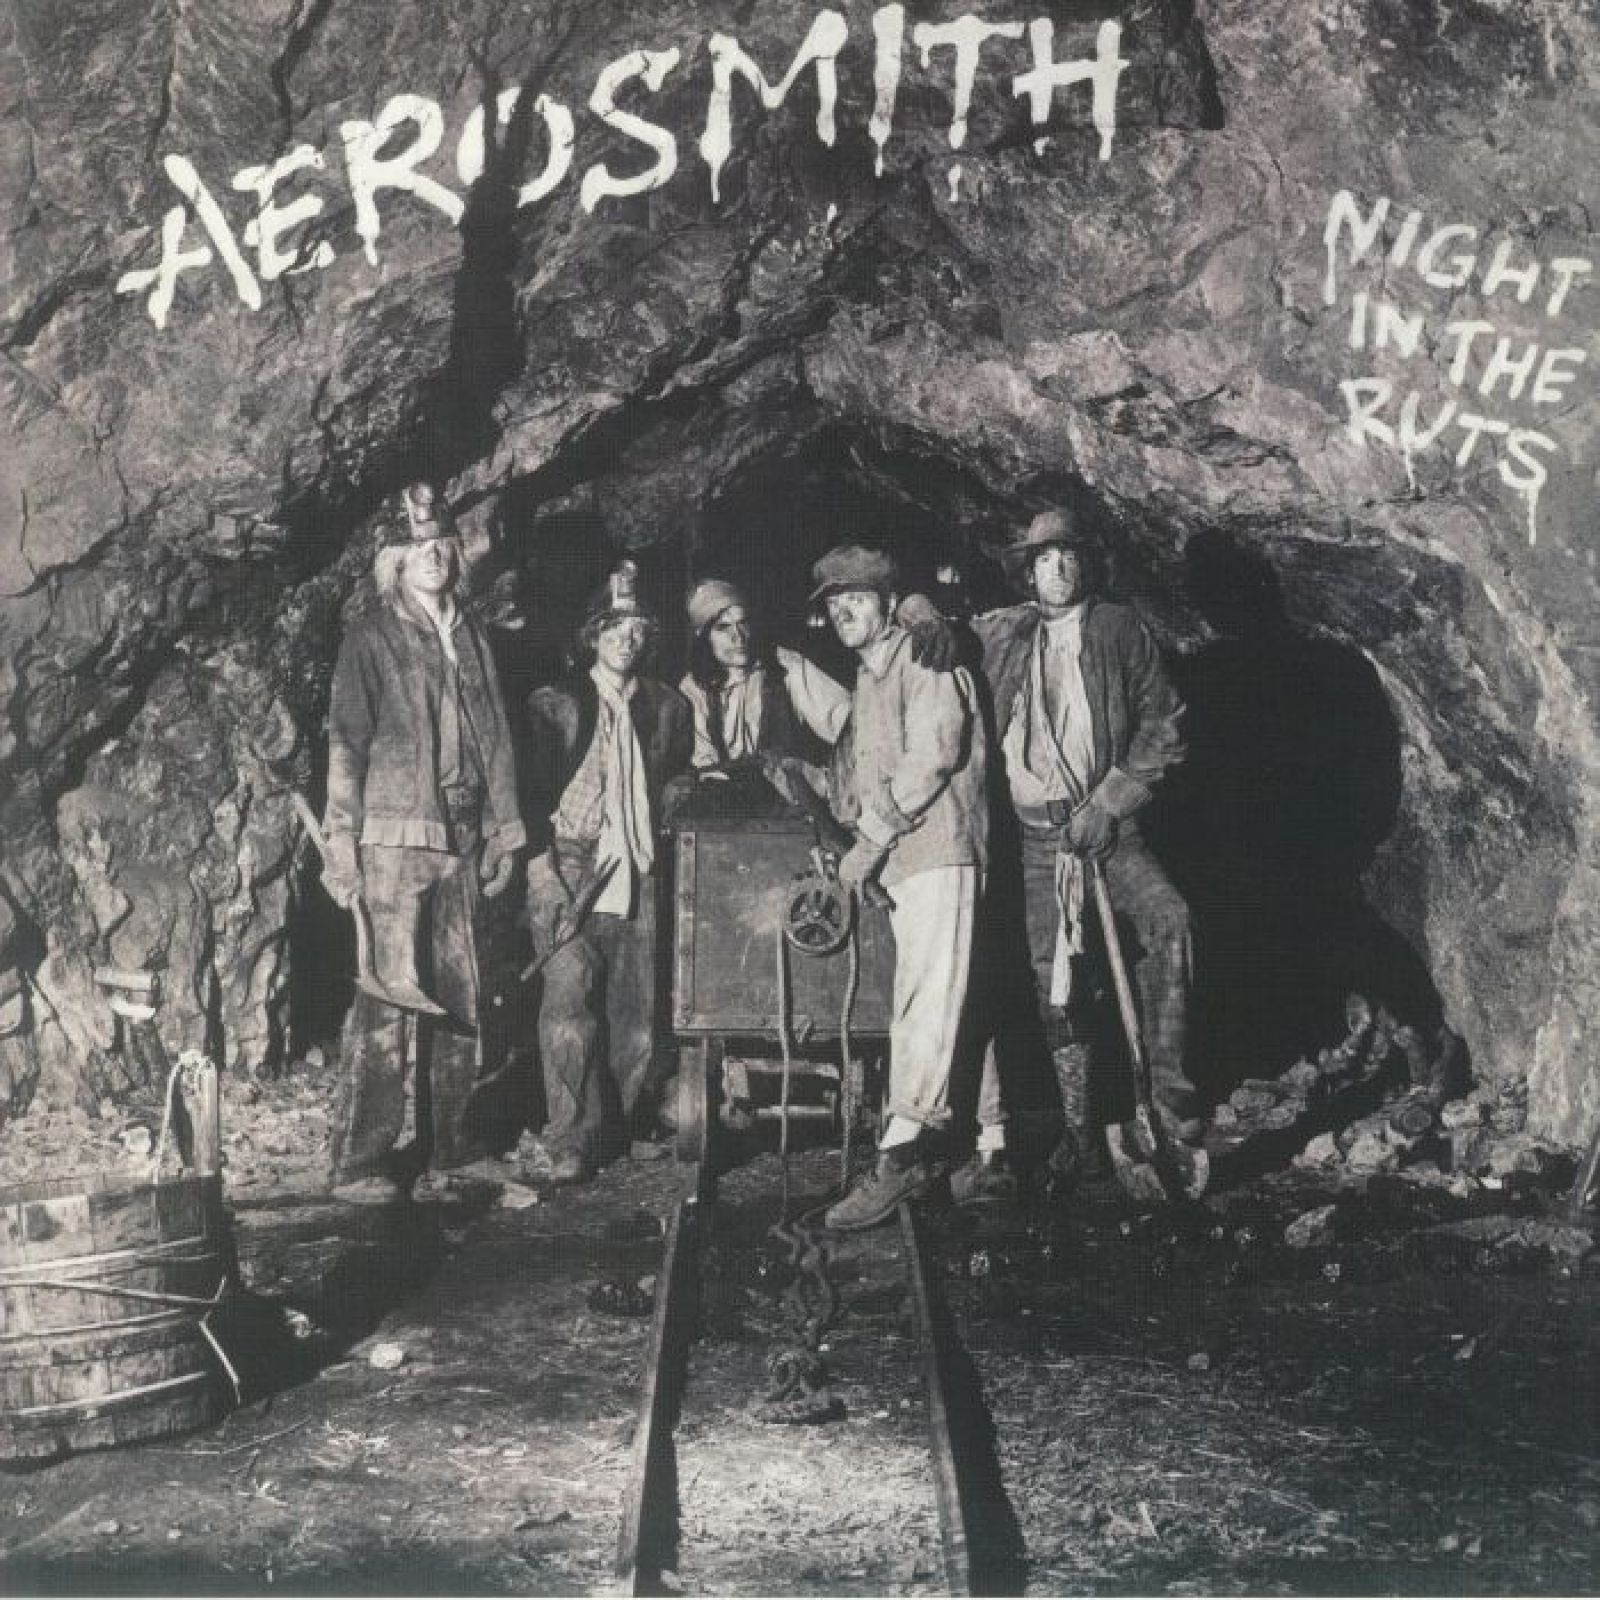 Виниловая пластинка Aerosmith, Night In The Ruts (0602455248657) aerosmith night in the ruts cd 1979 rock russia